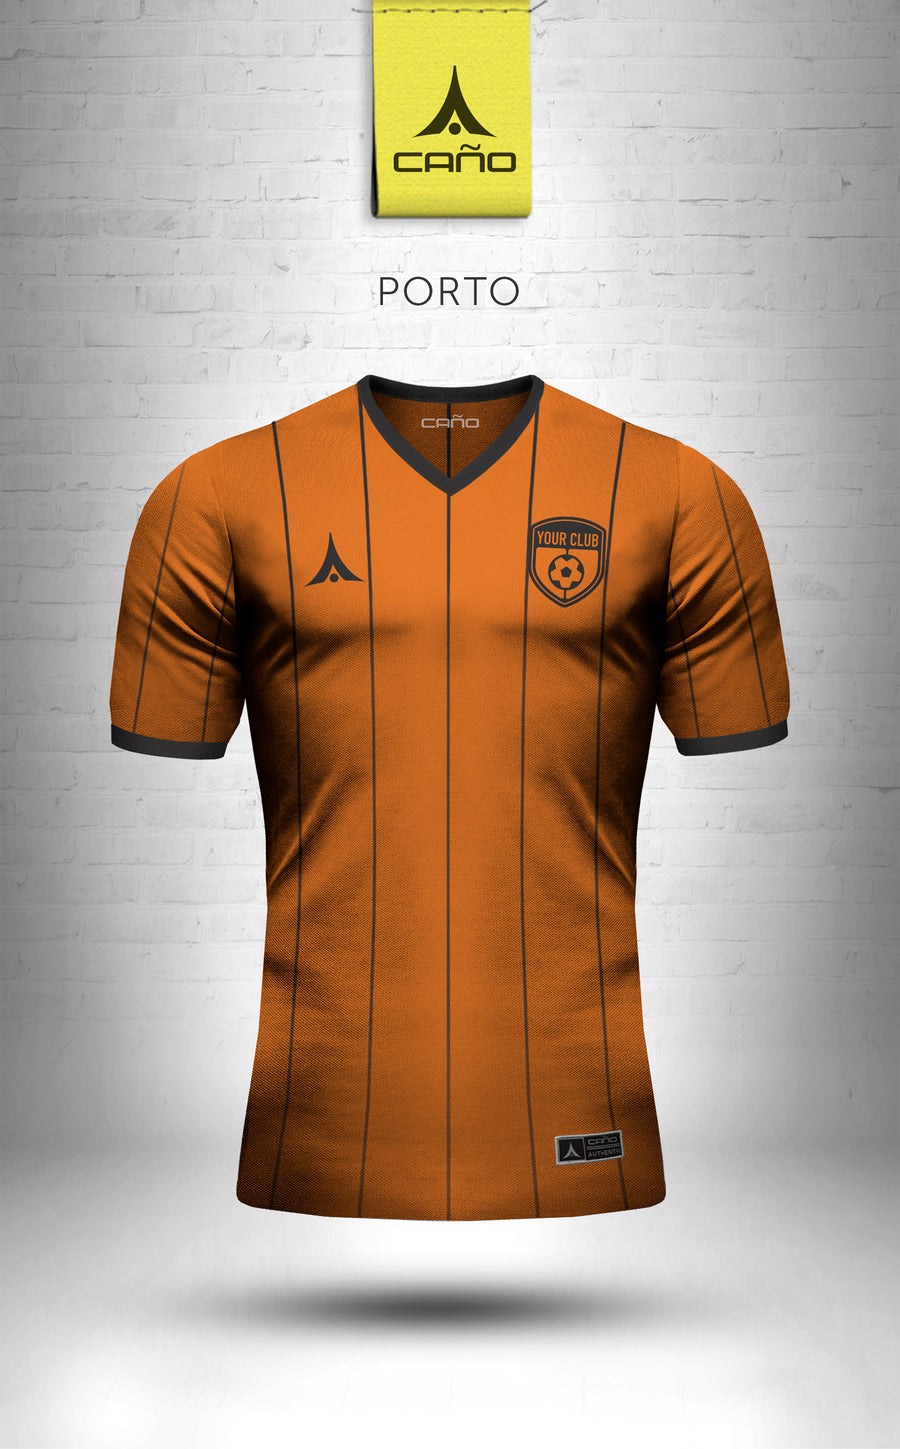 Porto in orange/black